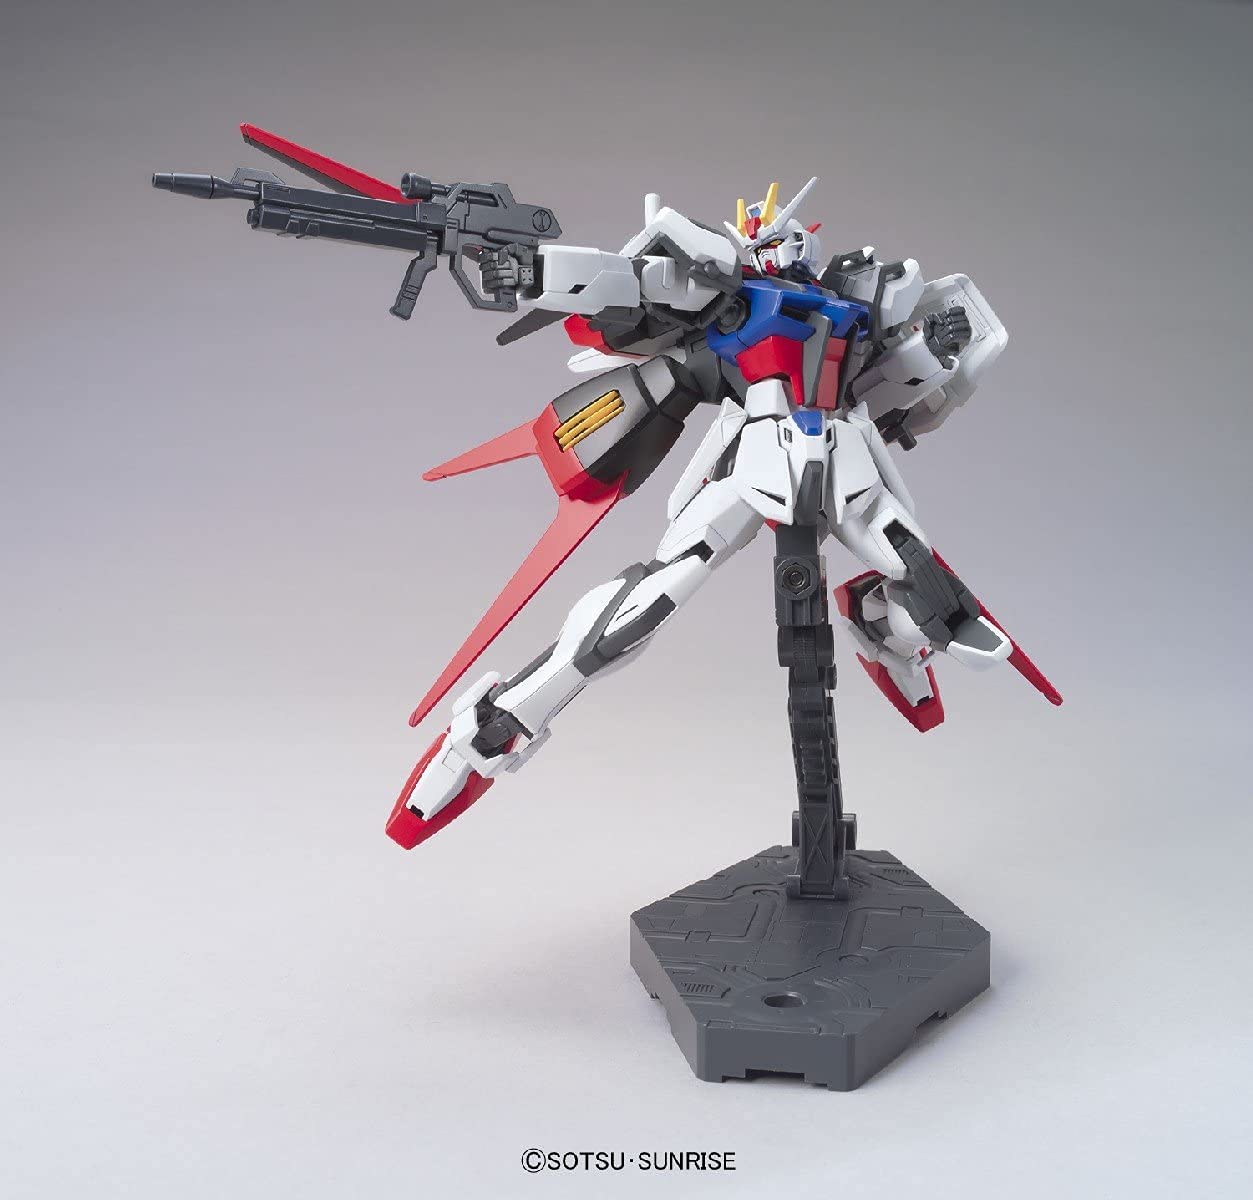 Bandai Hobby - HGCE - 1/144 HGCE Aile Strike Gundam